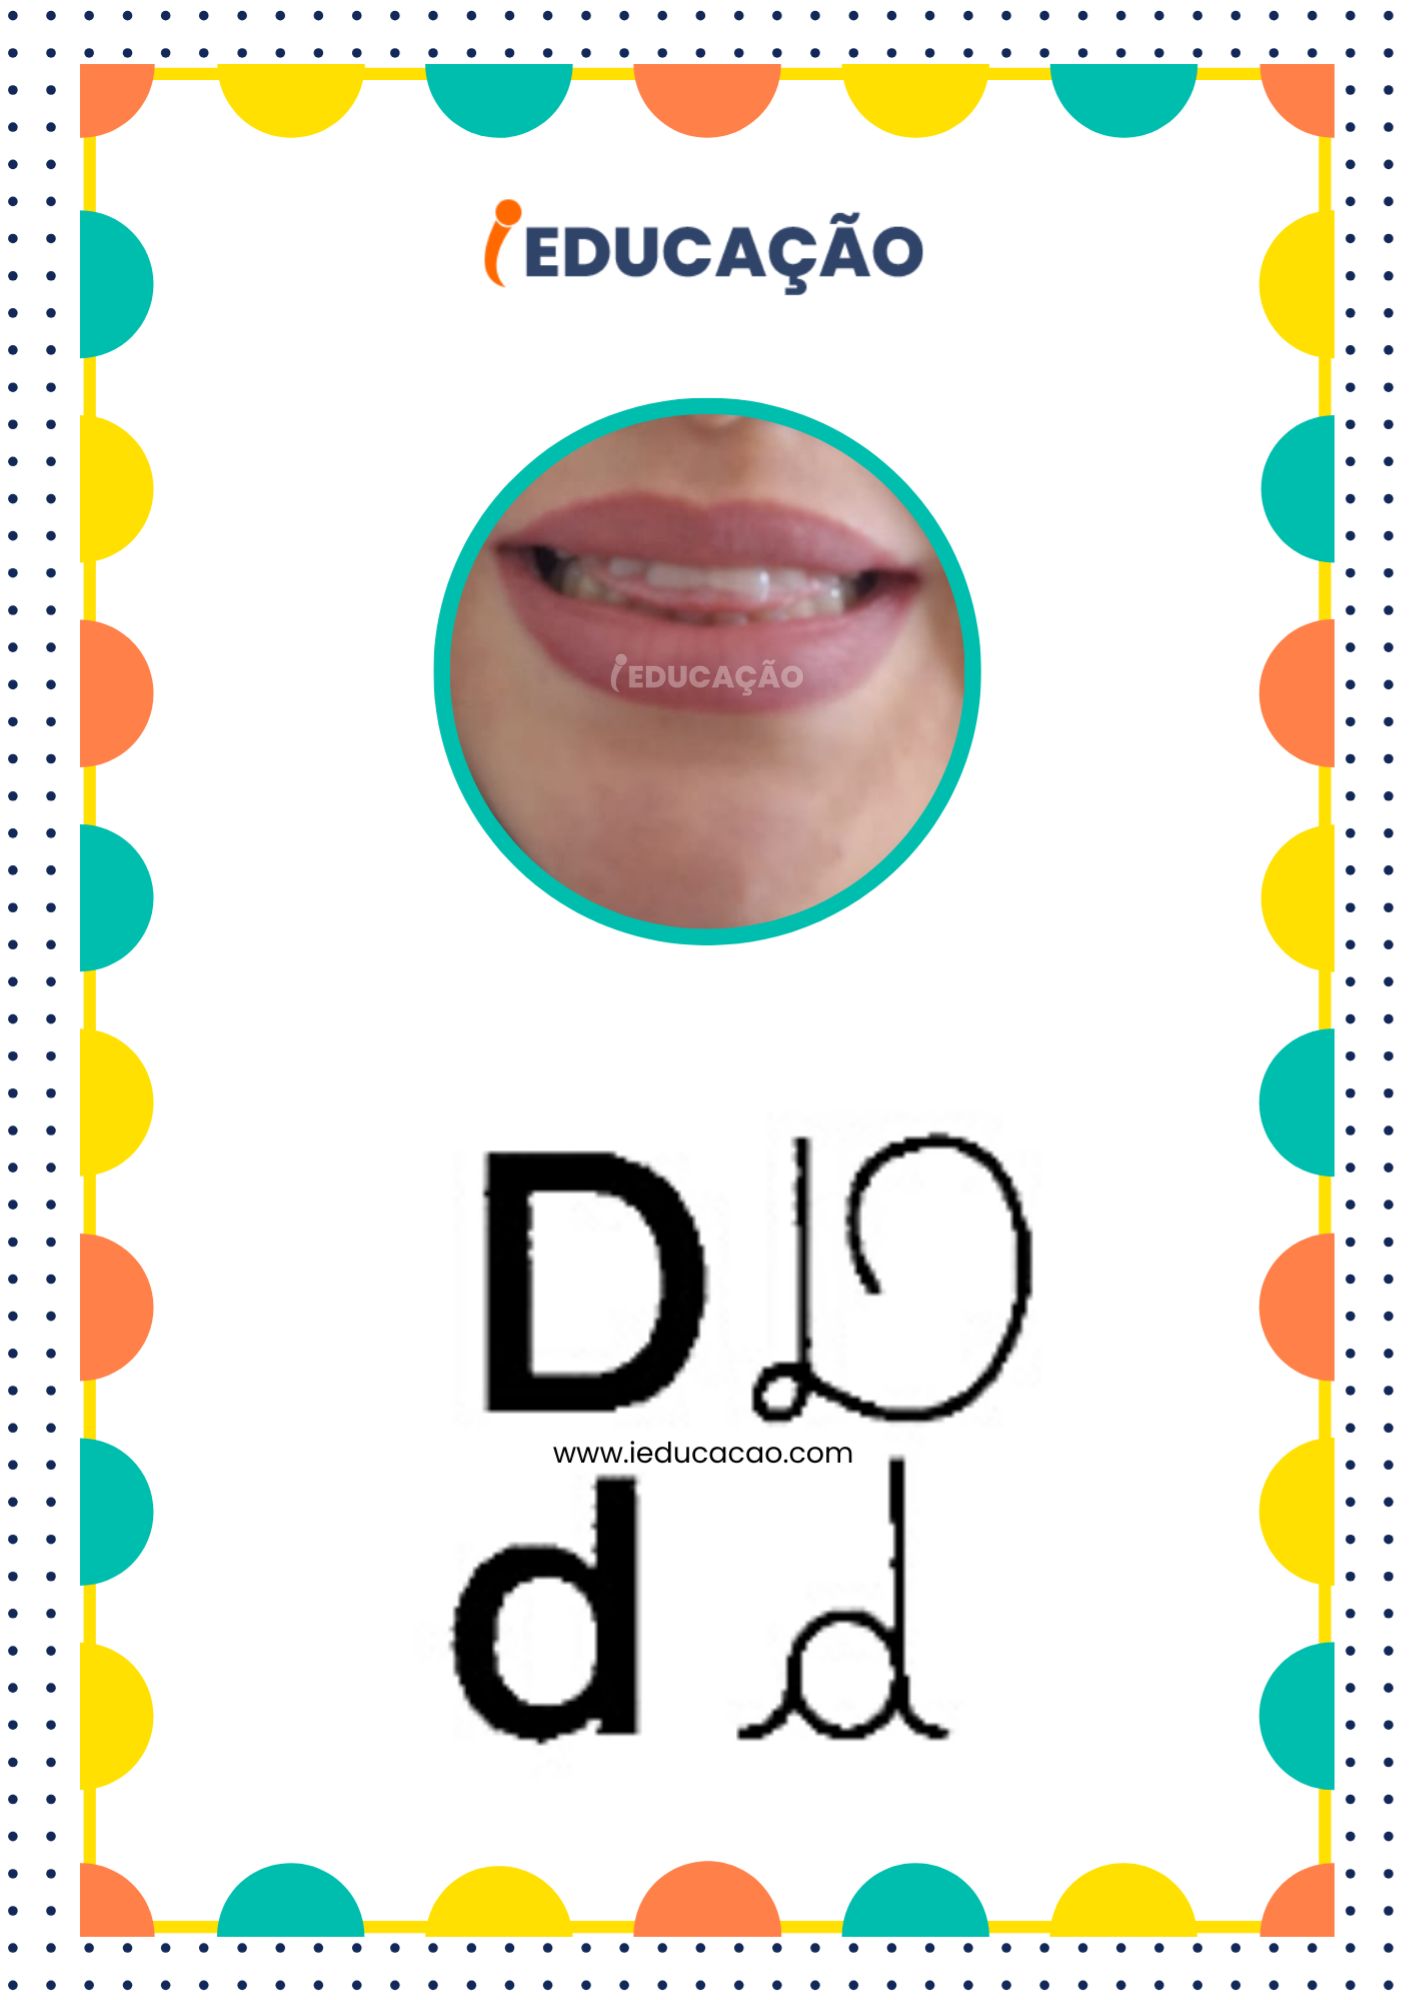 Letra D - Alfabeto Fônico com as letras do alfabeto - Consciência Fonológica